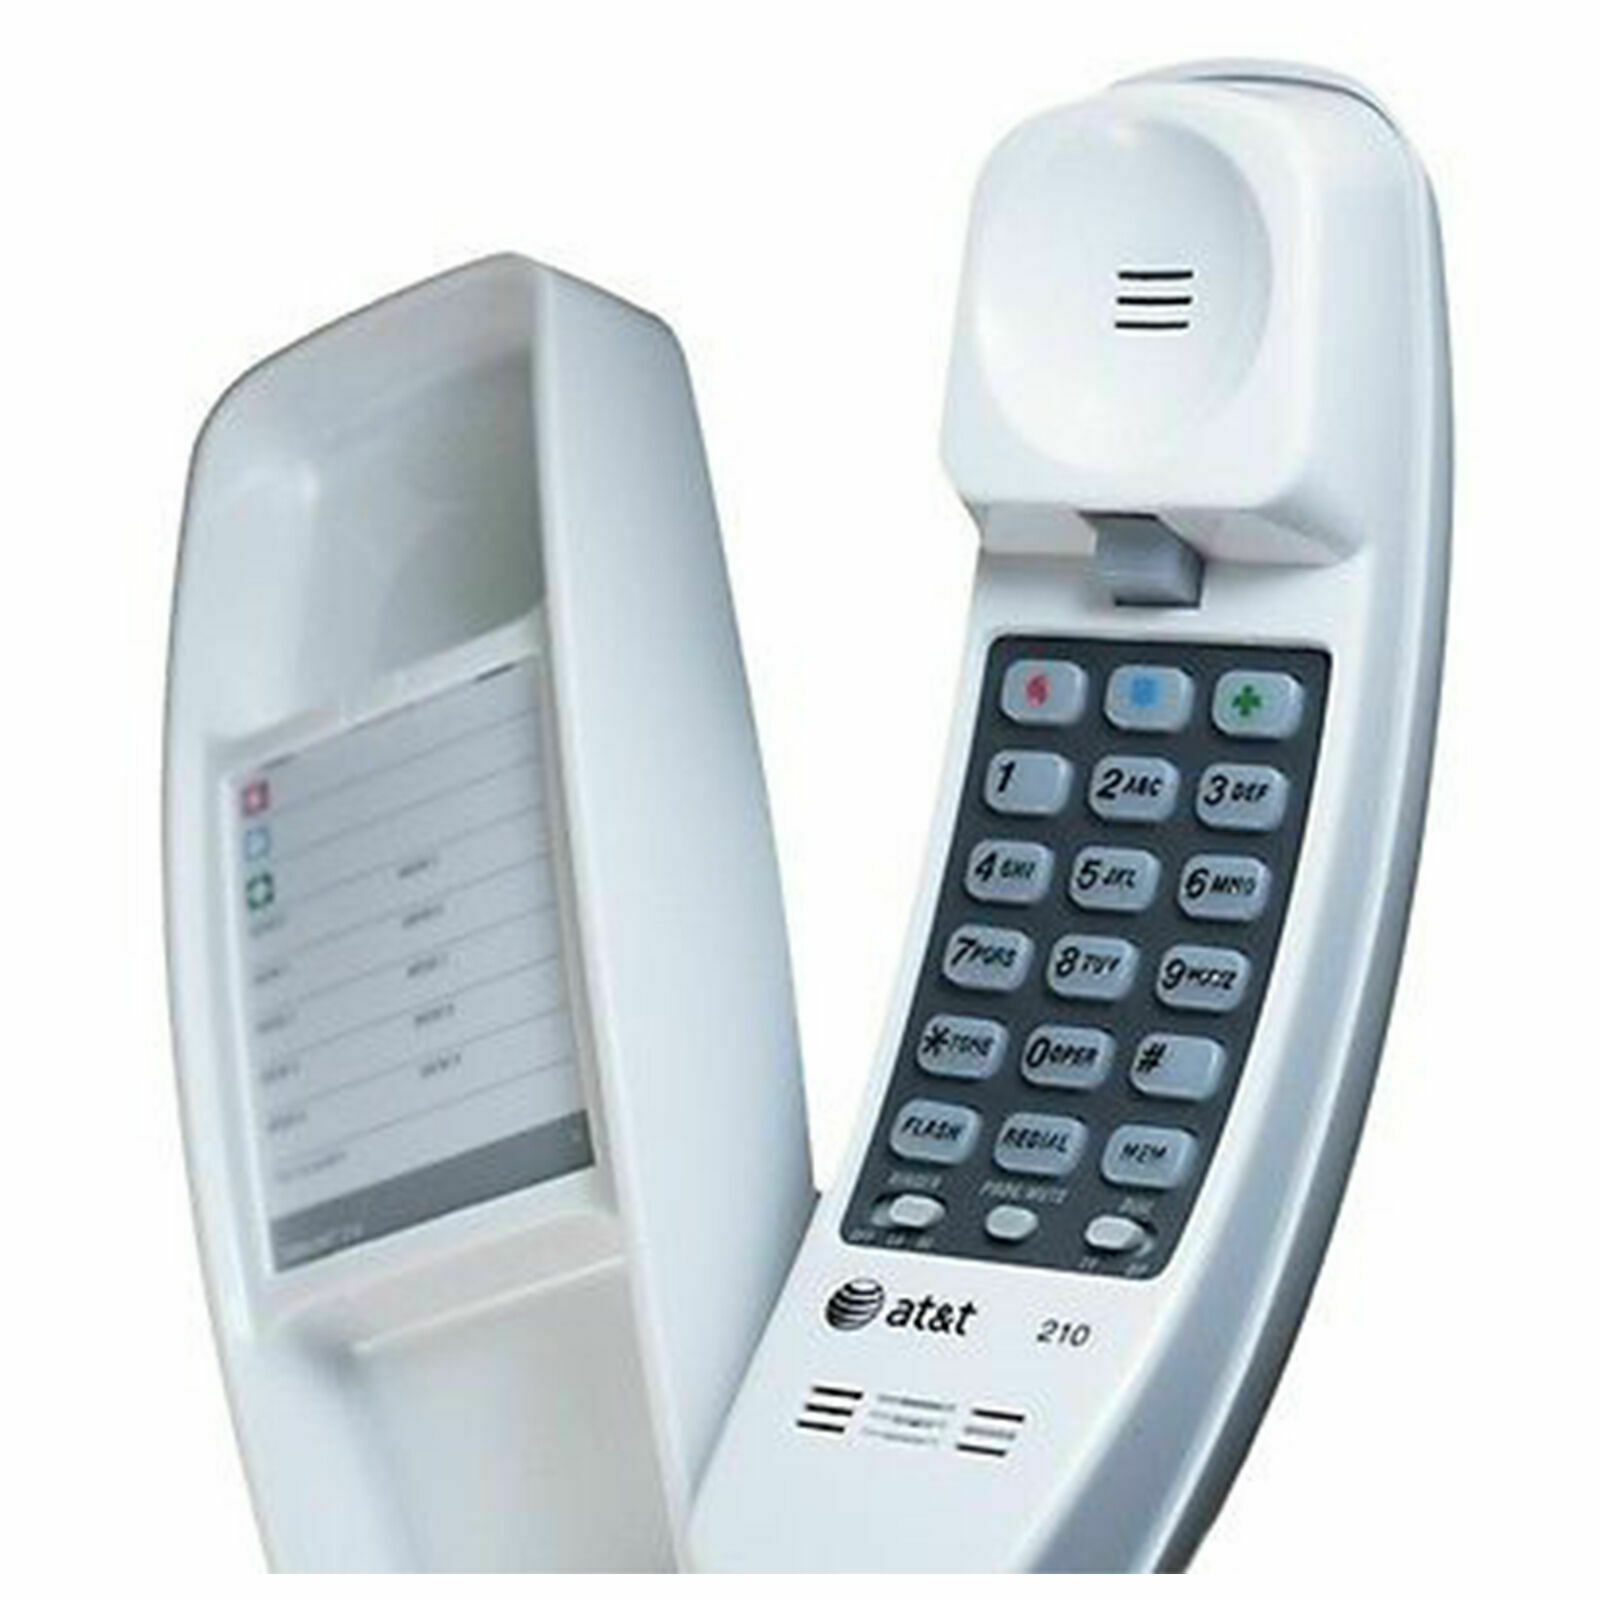 Corded Telephone Home Desk Wall Mount Landline White Handset Trimline Phone New